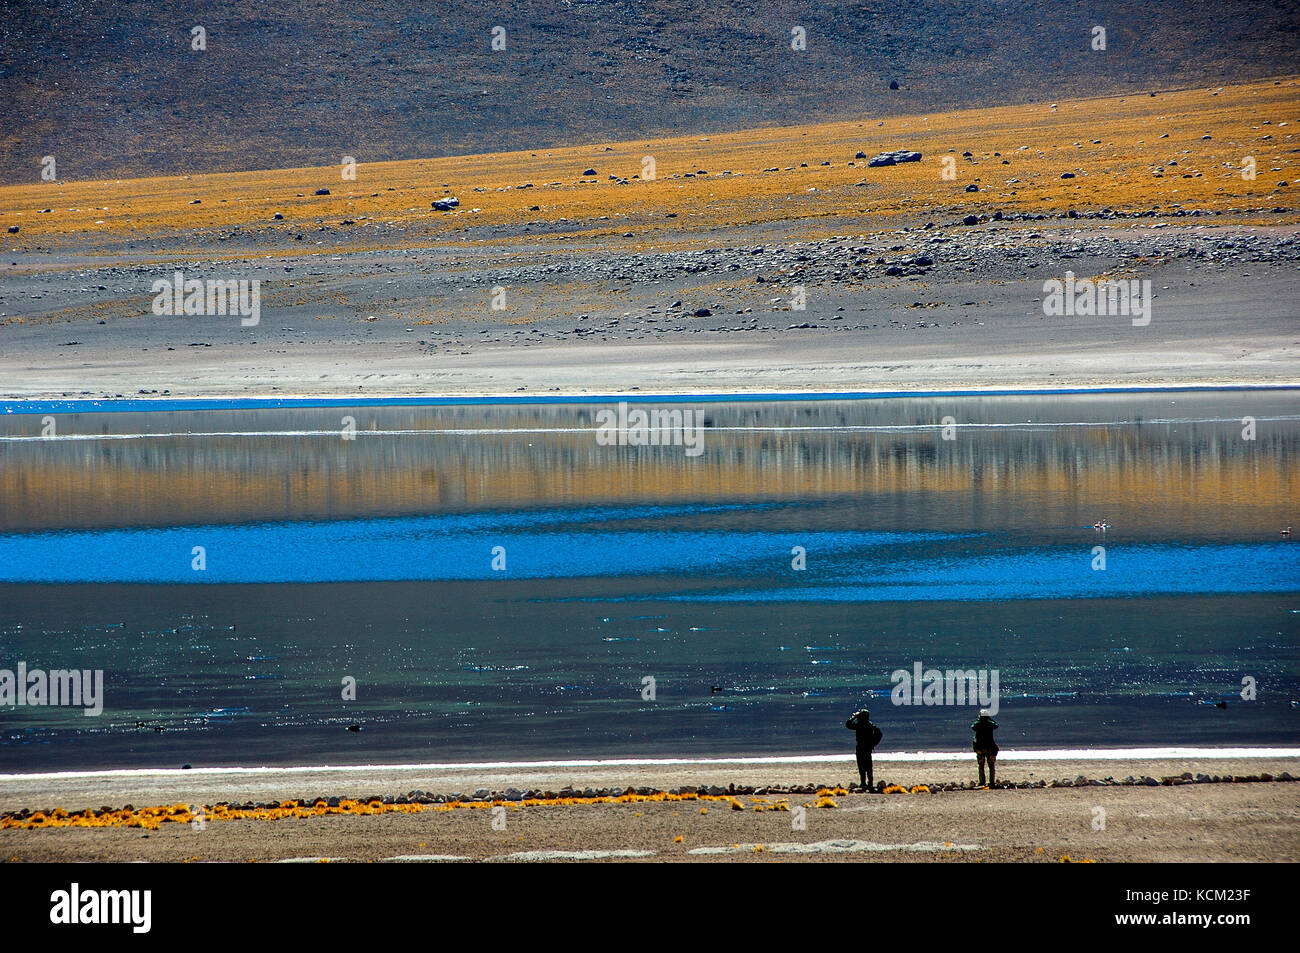 Chili désert d'Atacama laguna miscanti excursion le long de l'eau waych birdlife. Los Flamencos nature reserve miscanti section. Banque D'Images